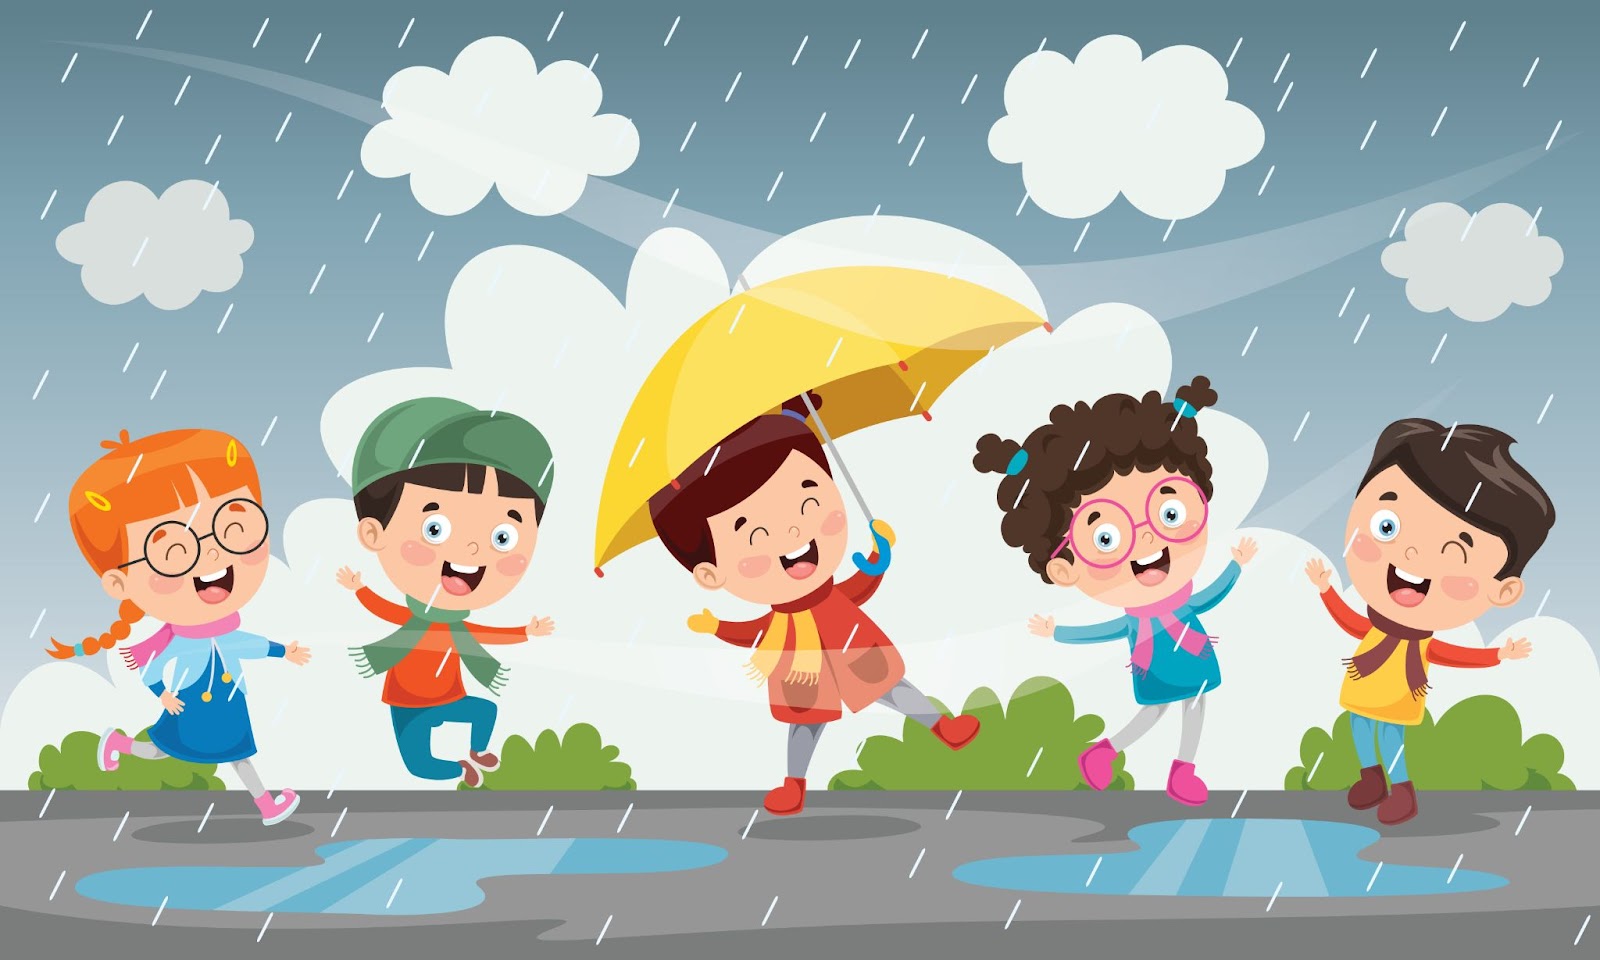 הסבר לילדים כיצד נוצר הגשם אינו רק מתן עובדות, מדובר בהפיכת חווית הלמידה למהנה ובלתי נשכחת.